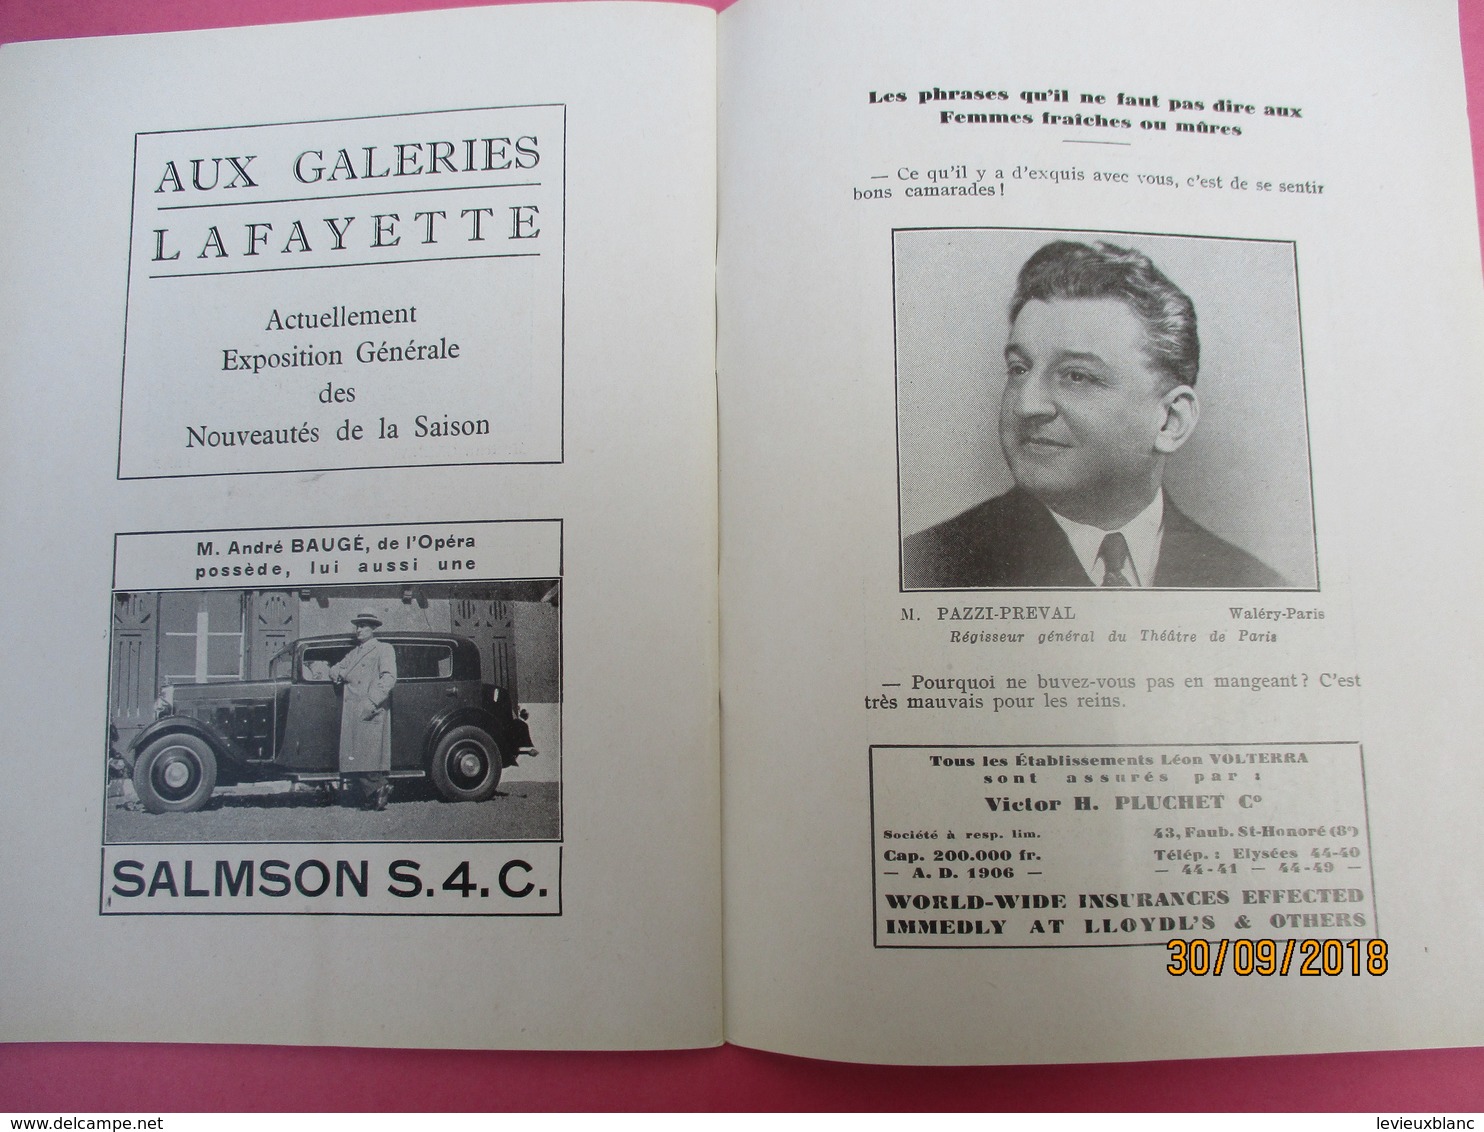 Théatre de PARIS/Volterra/Tovaritch/Jacques DEVAL/Elvire Popesco/Mirval/Renault/Delage/Chenard/Saison 1933-1934  PROG195